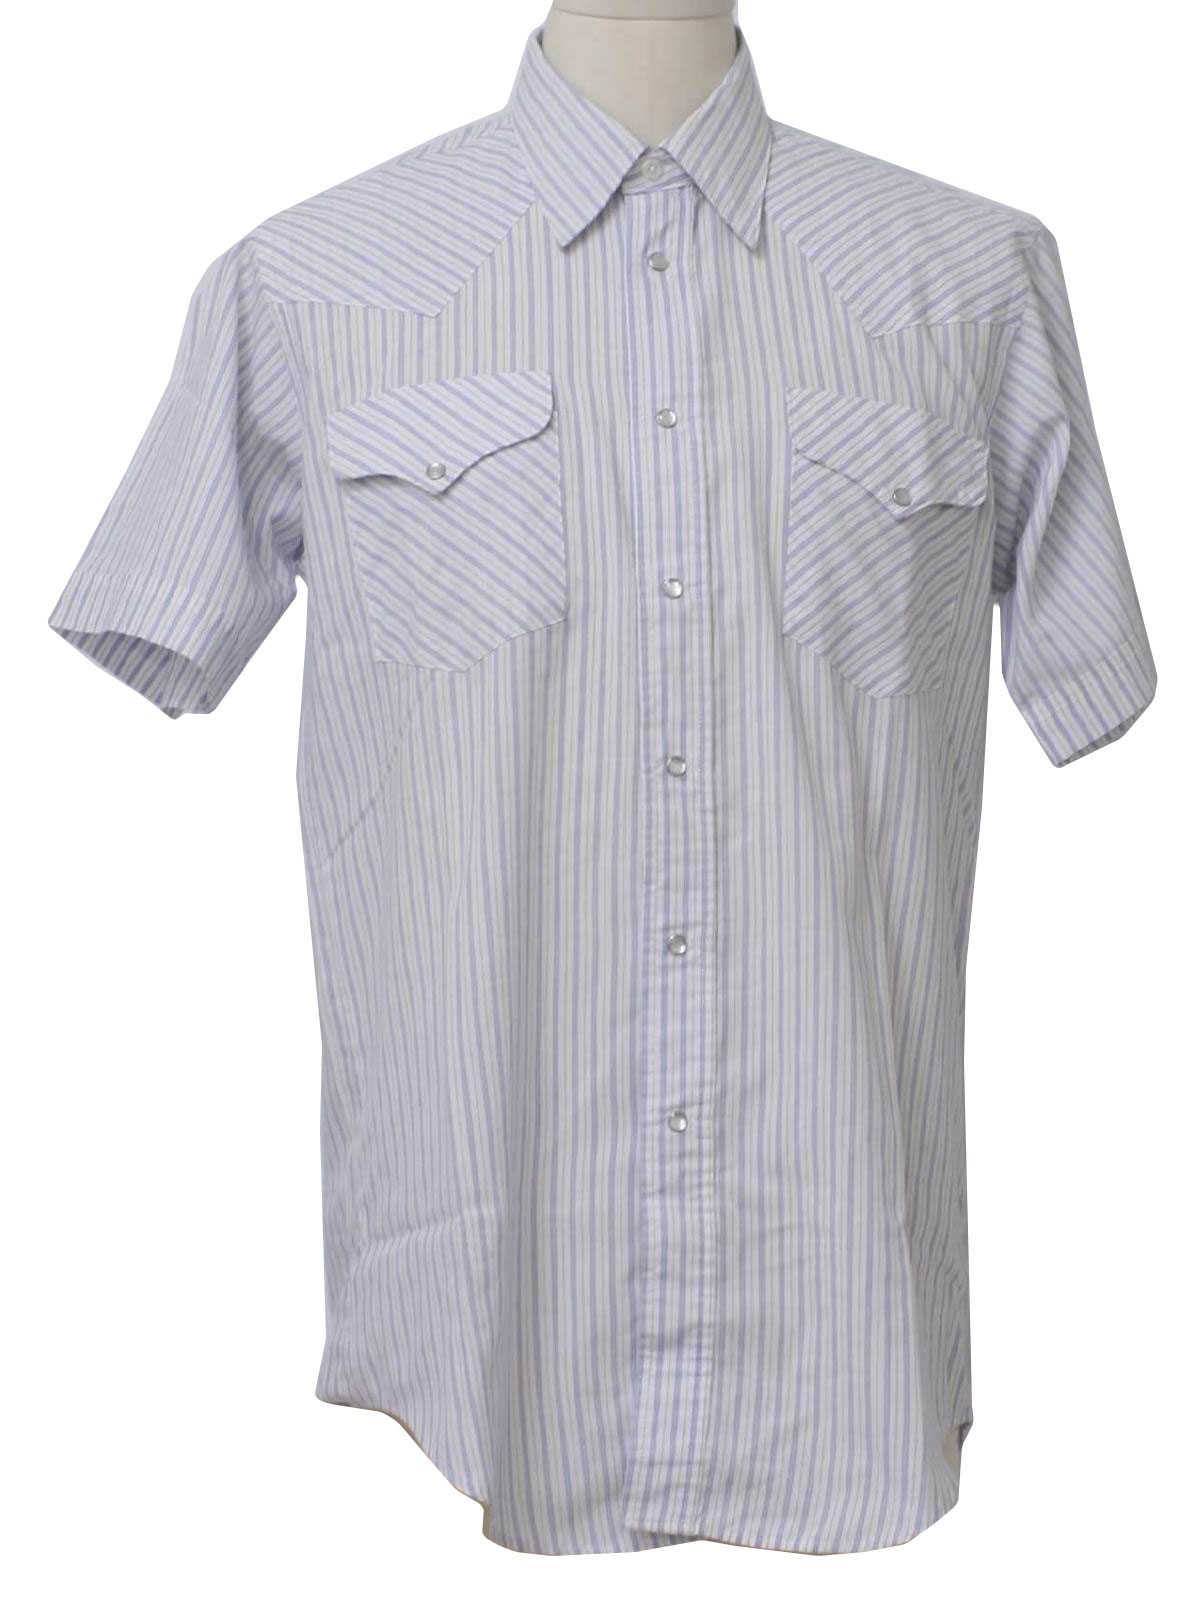 Retro Eighties Western Shirt: 80s -Ruddock Shirts- Mens white ...